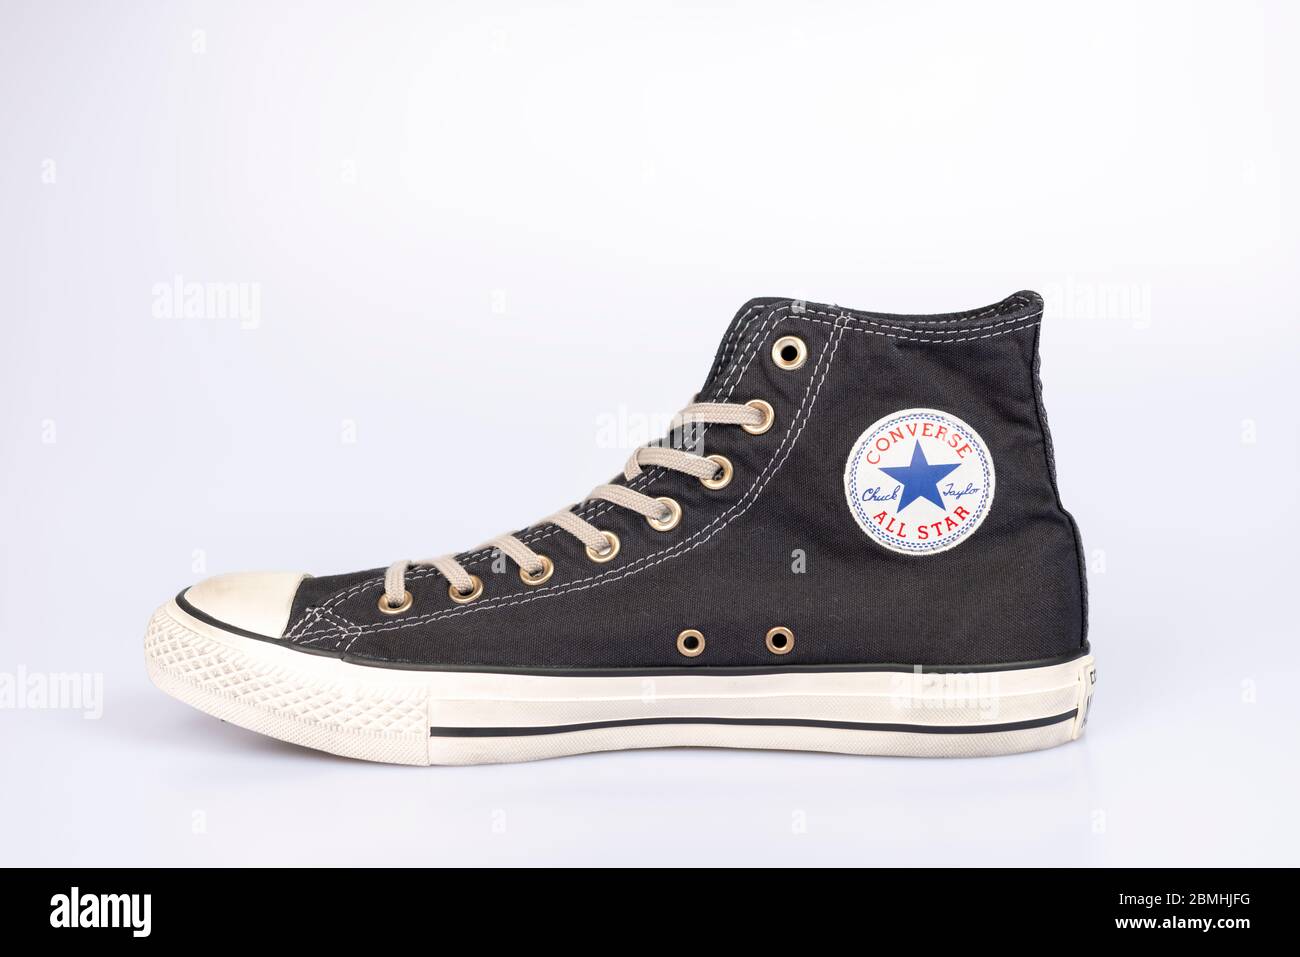 Converse Chuck Taylor All Star High schwarzer Sneaker auf weißem Hintergrund Stockfoto